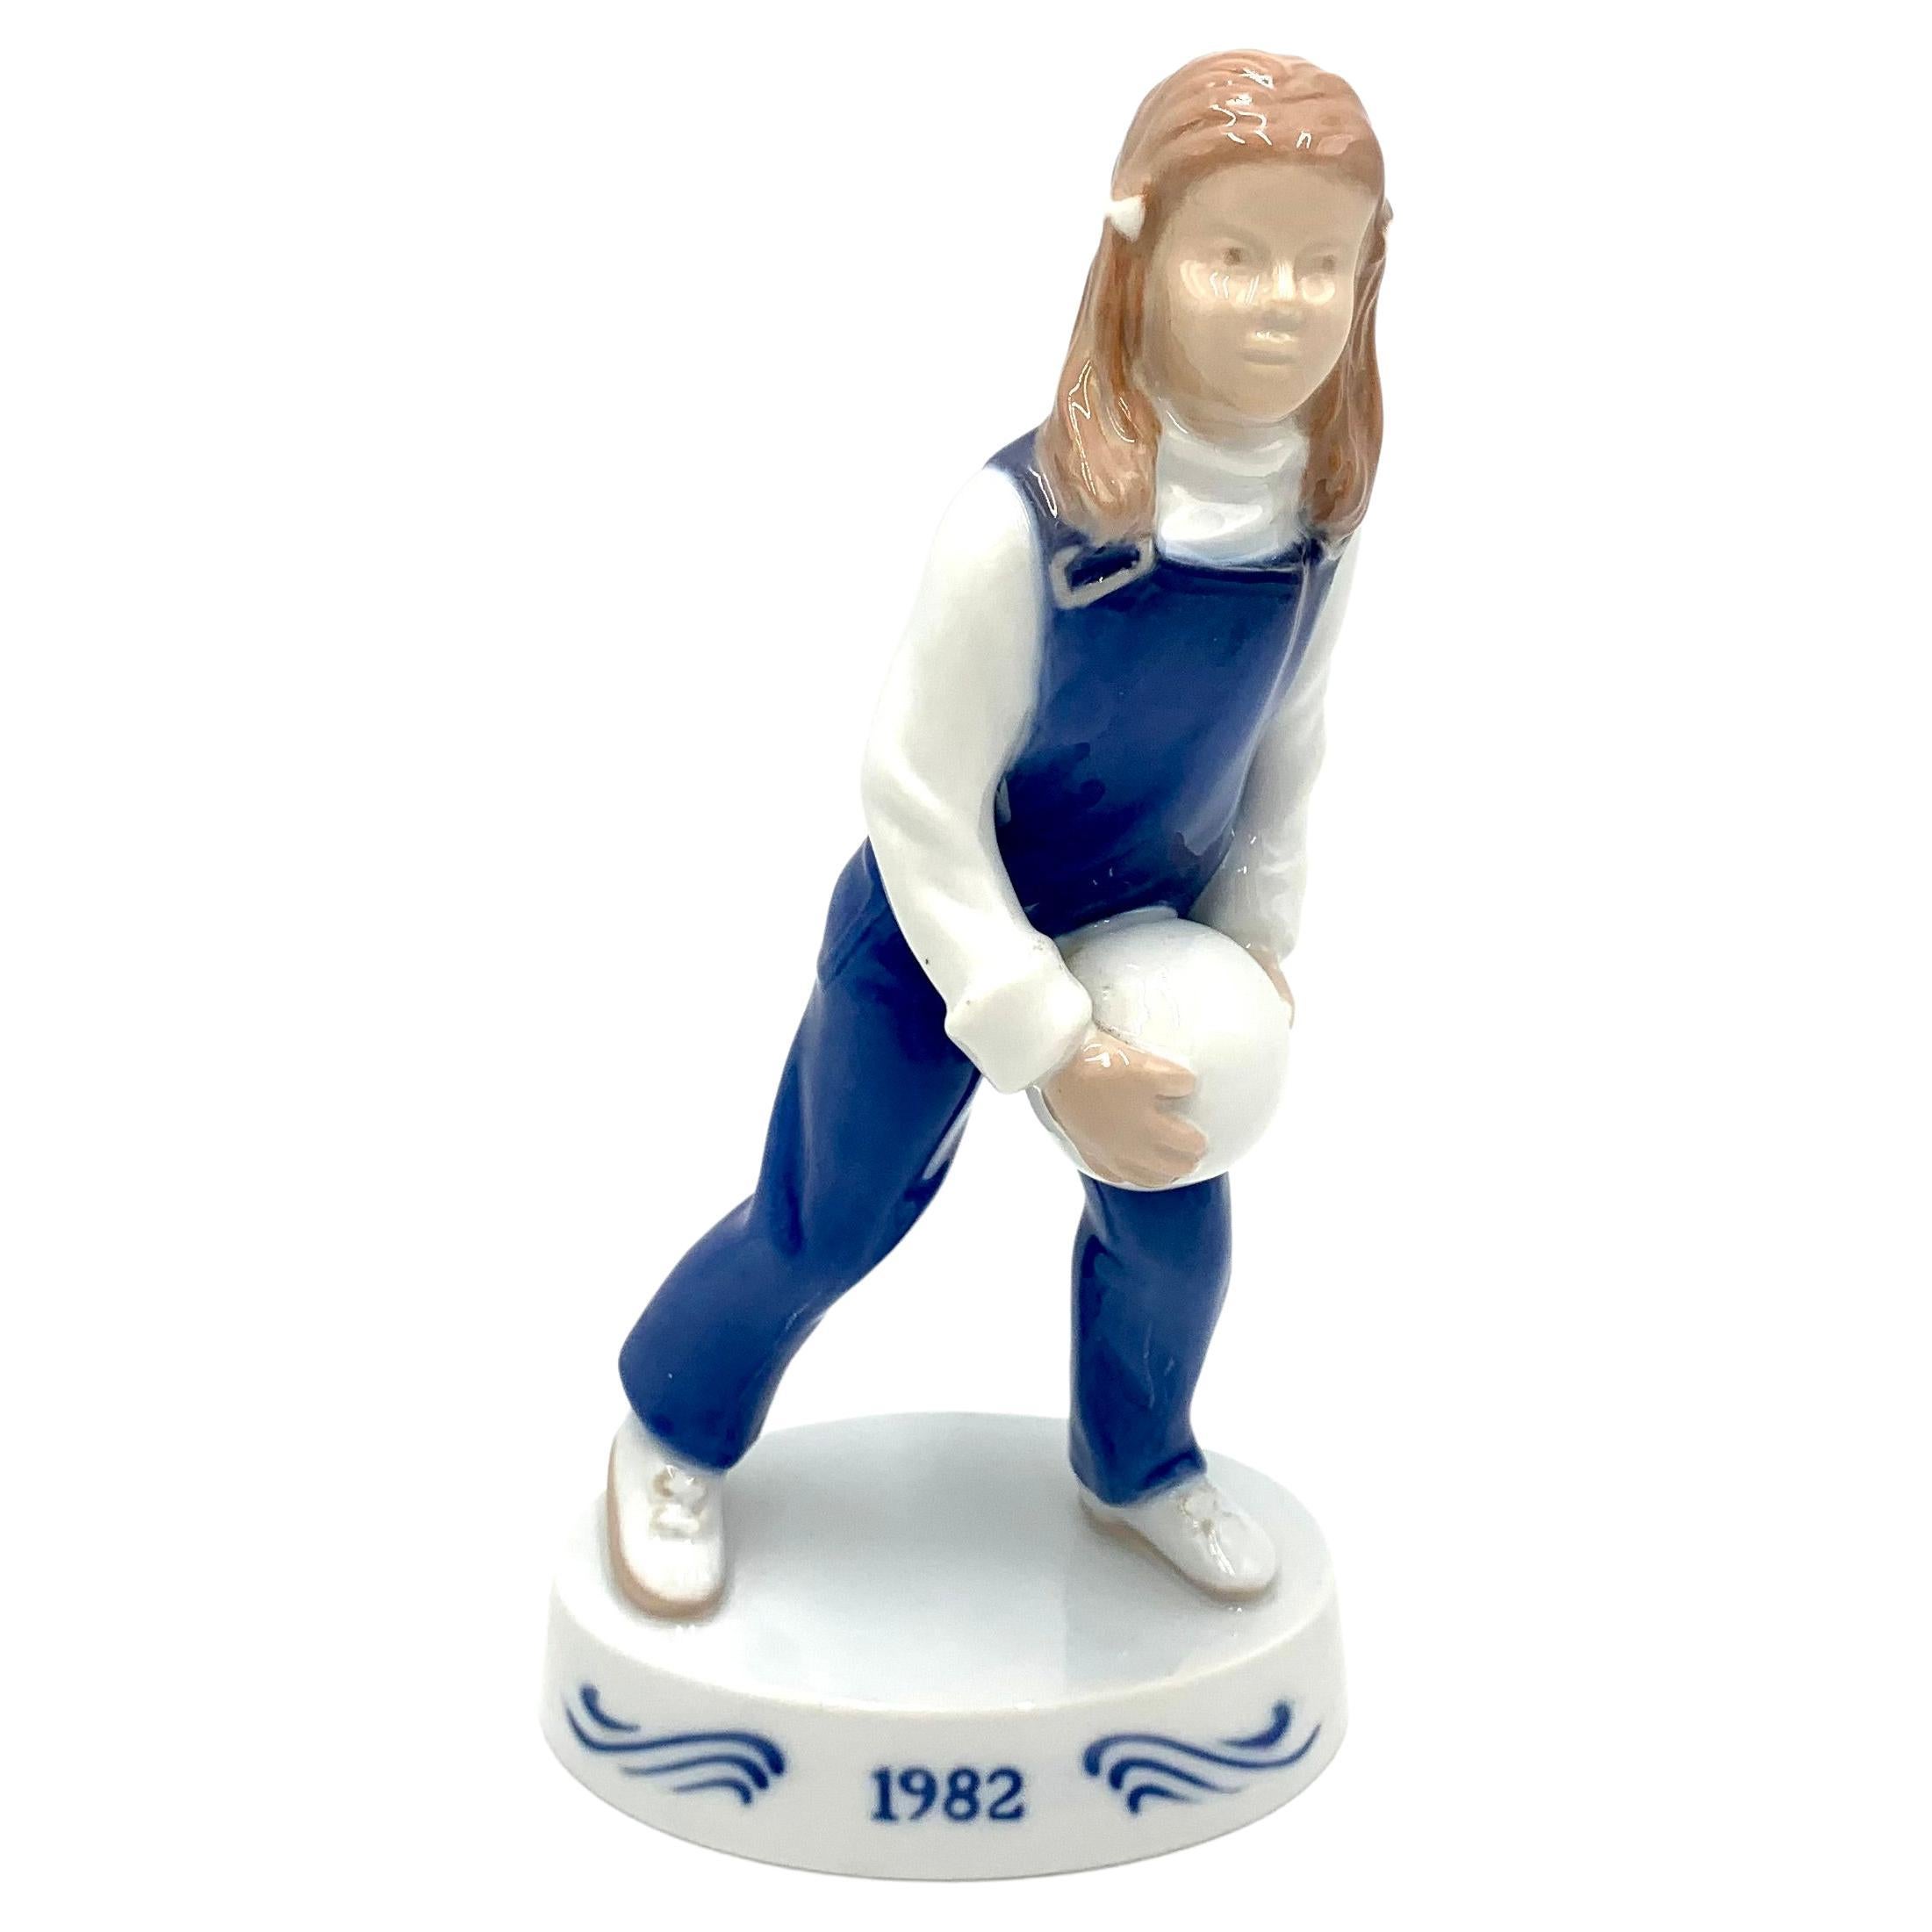 Figurine en porcelaine d'une fille avec un boulet, Bing & Grondahl, Danemark, 1982 Figurine